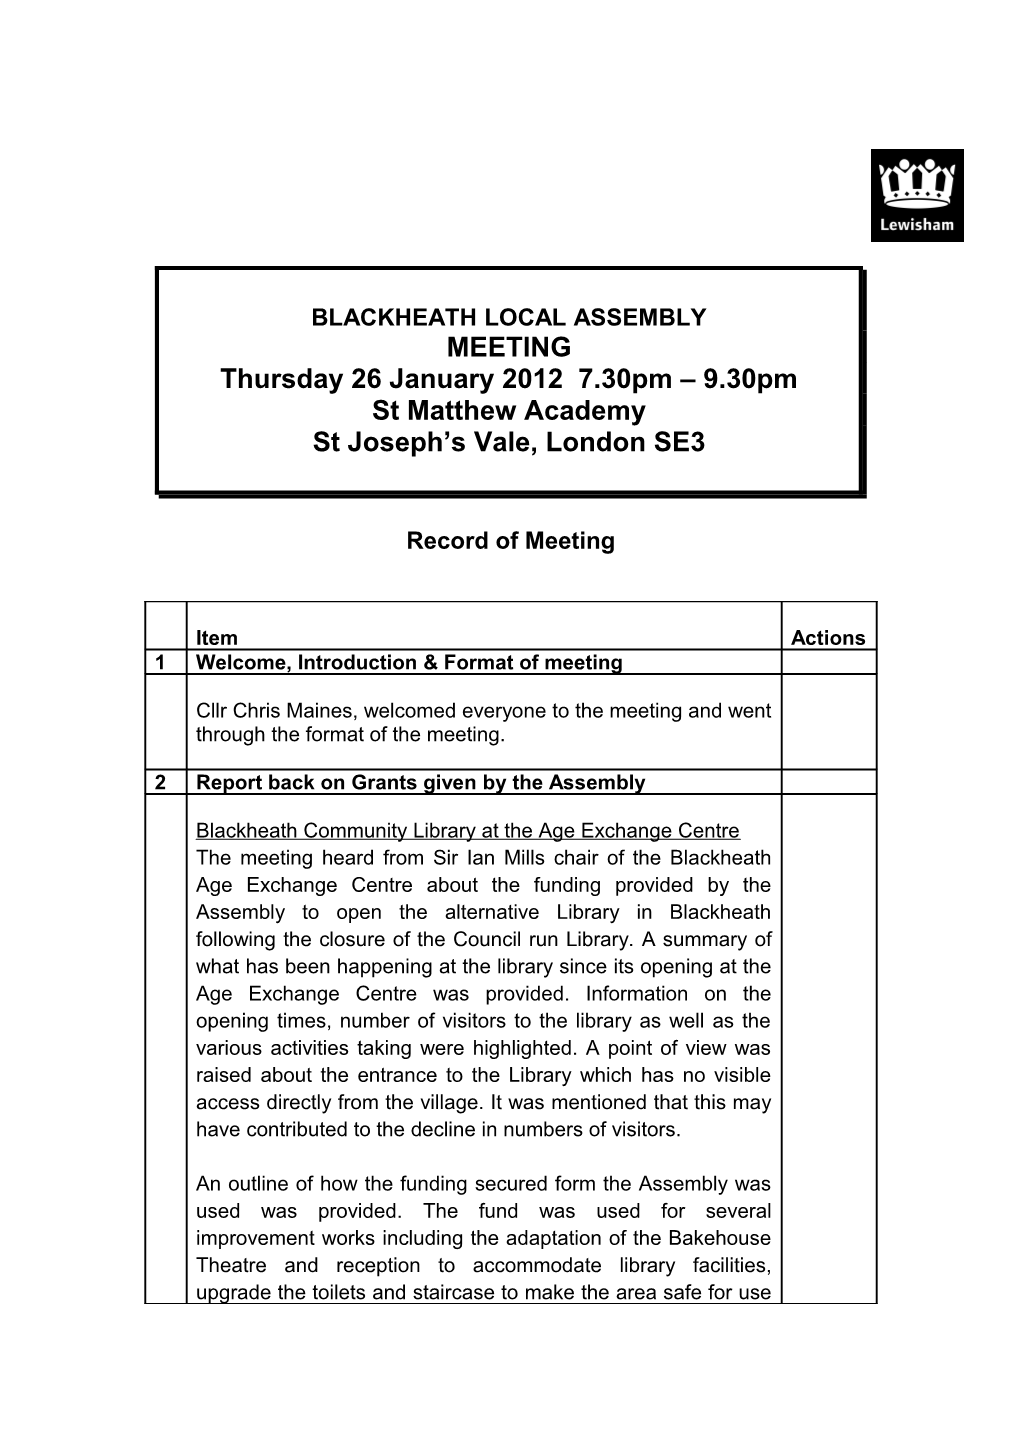 Blackheath Assembly Meeting 26 January 2012